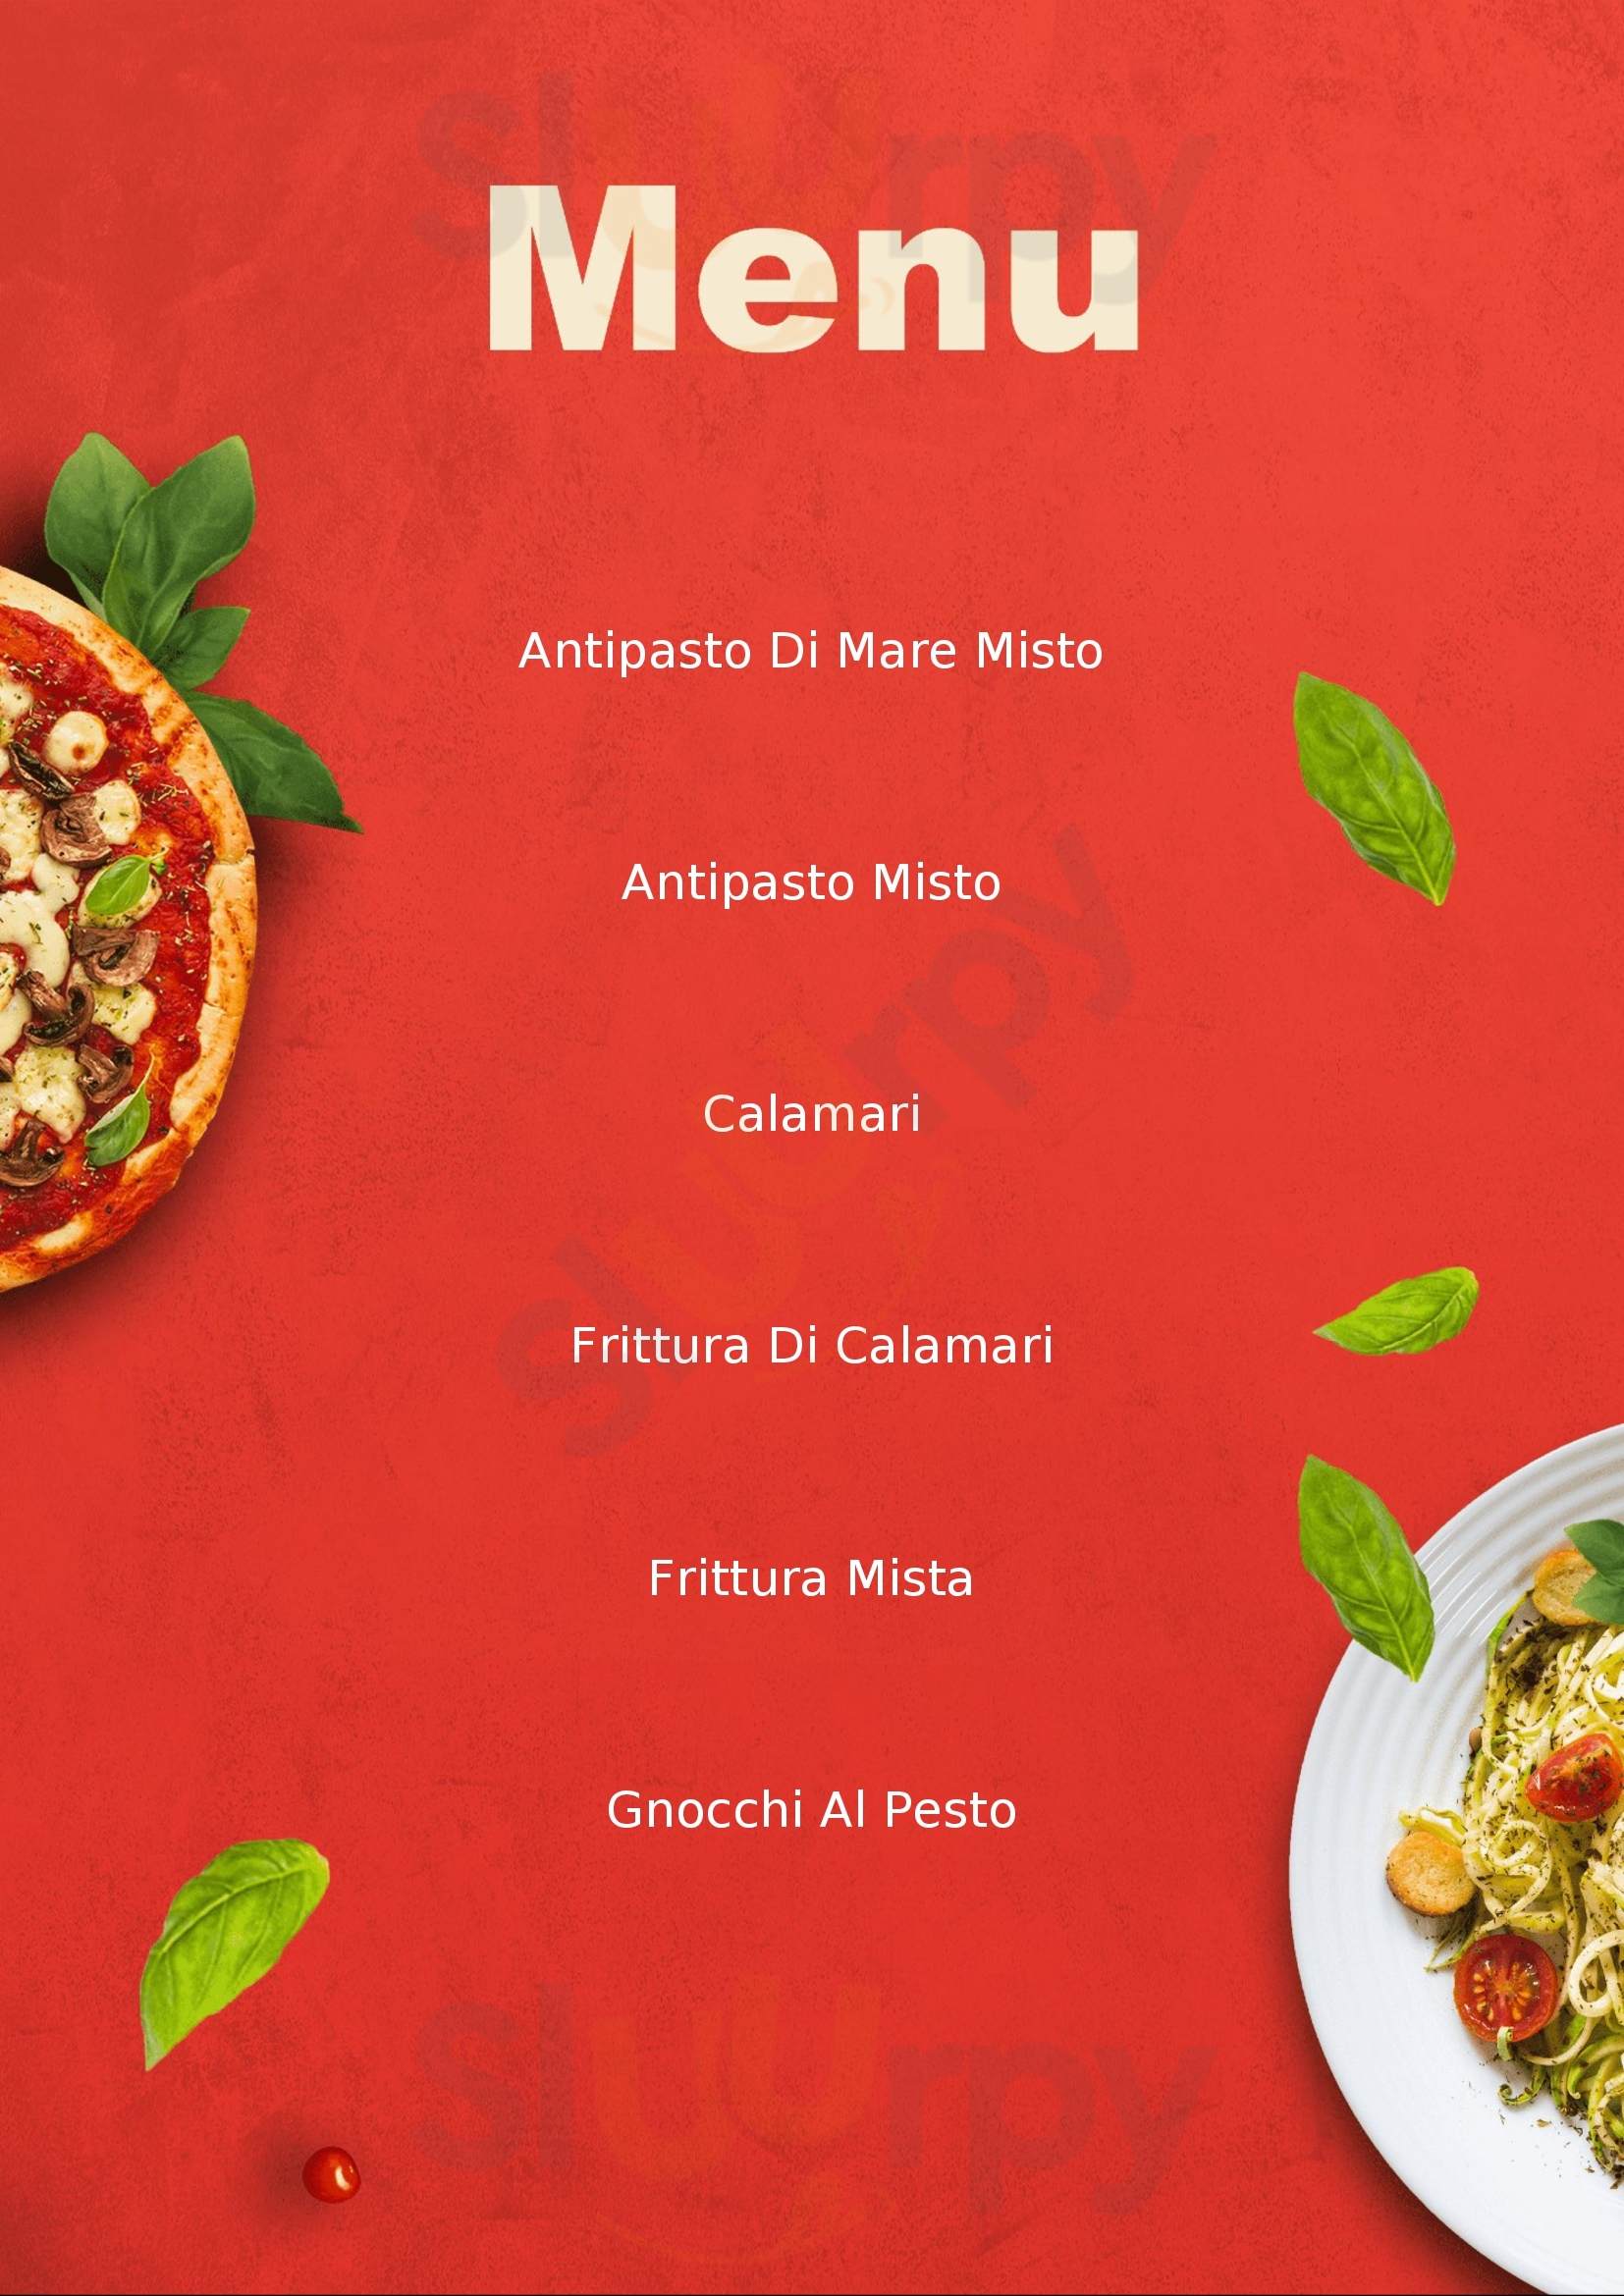 Ristorante Pizzaeria Mima La Spezia menù 1 pagina